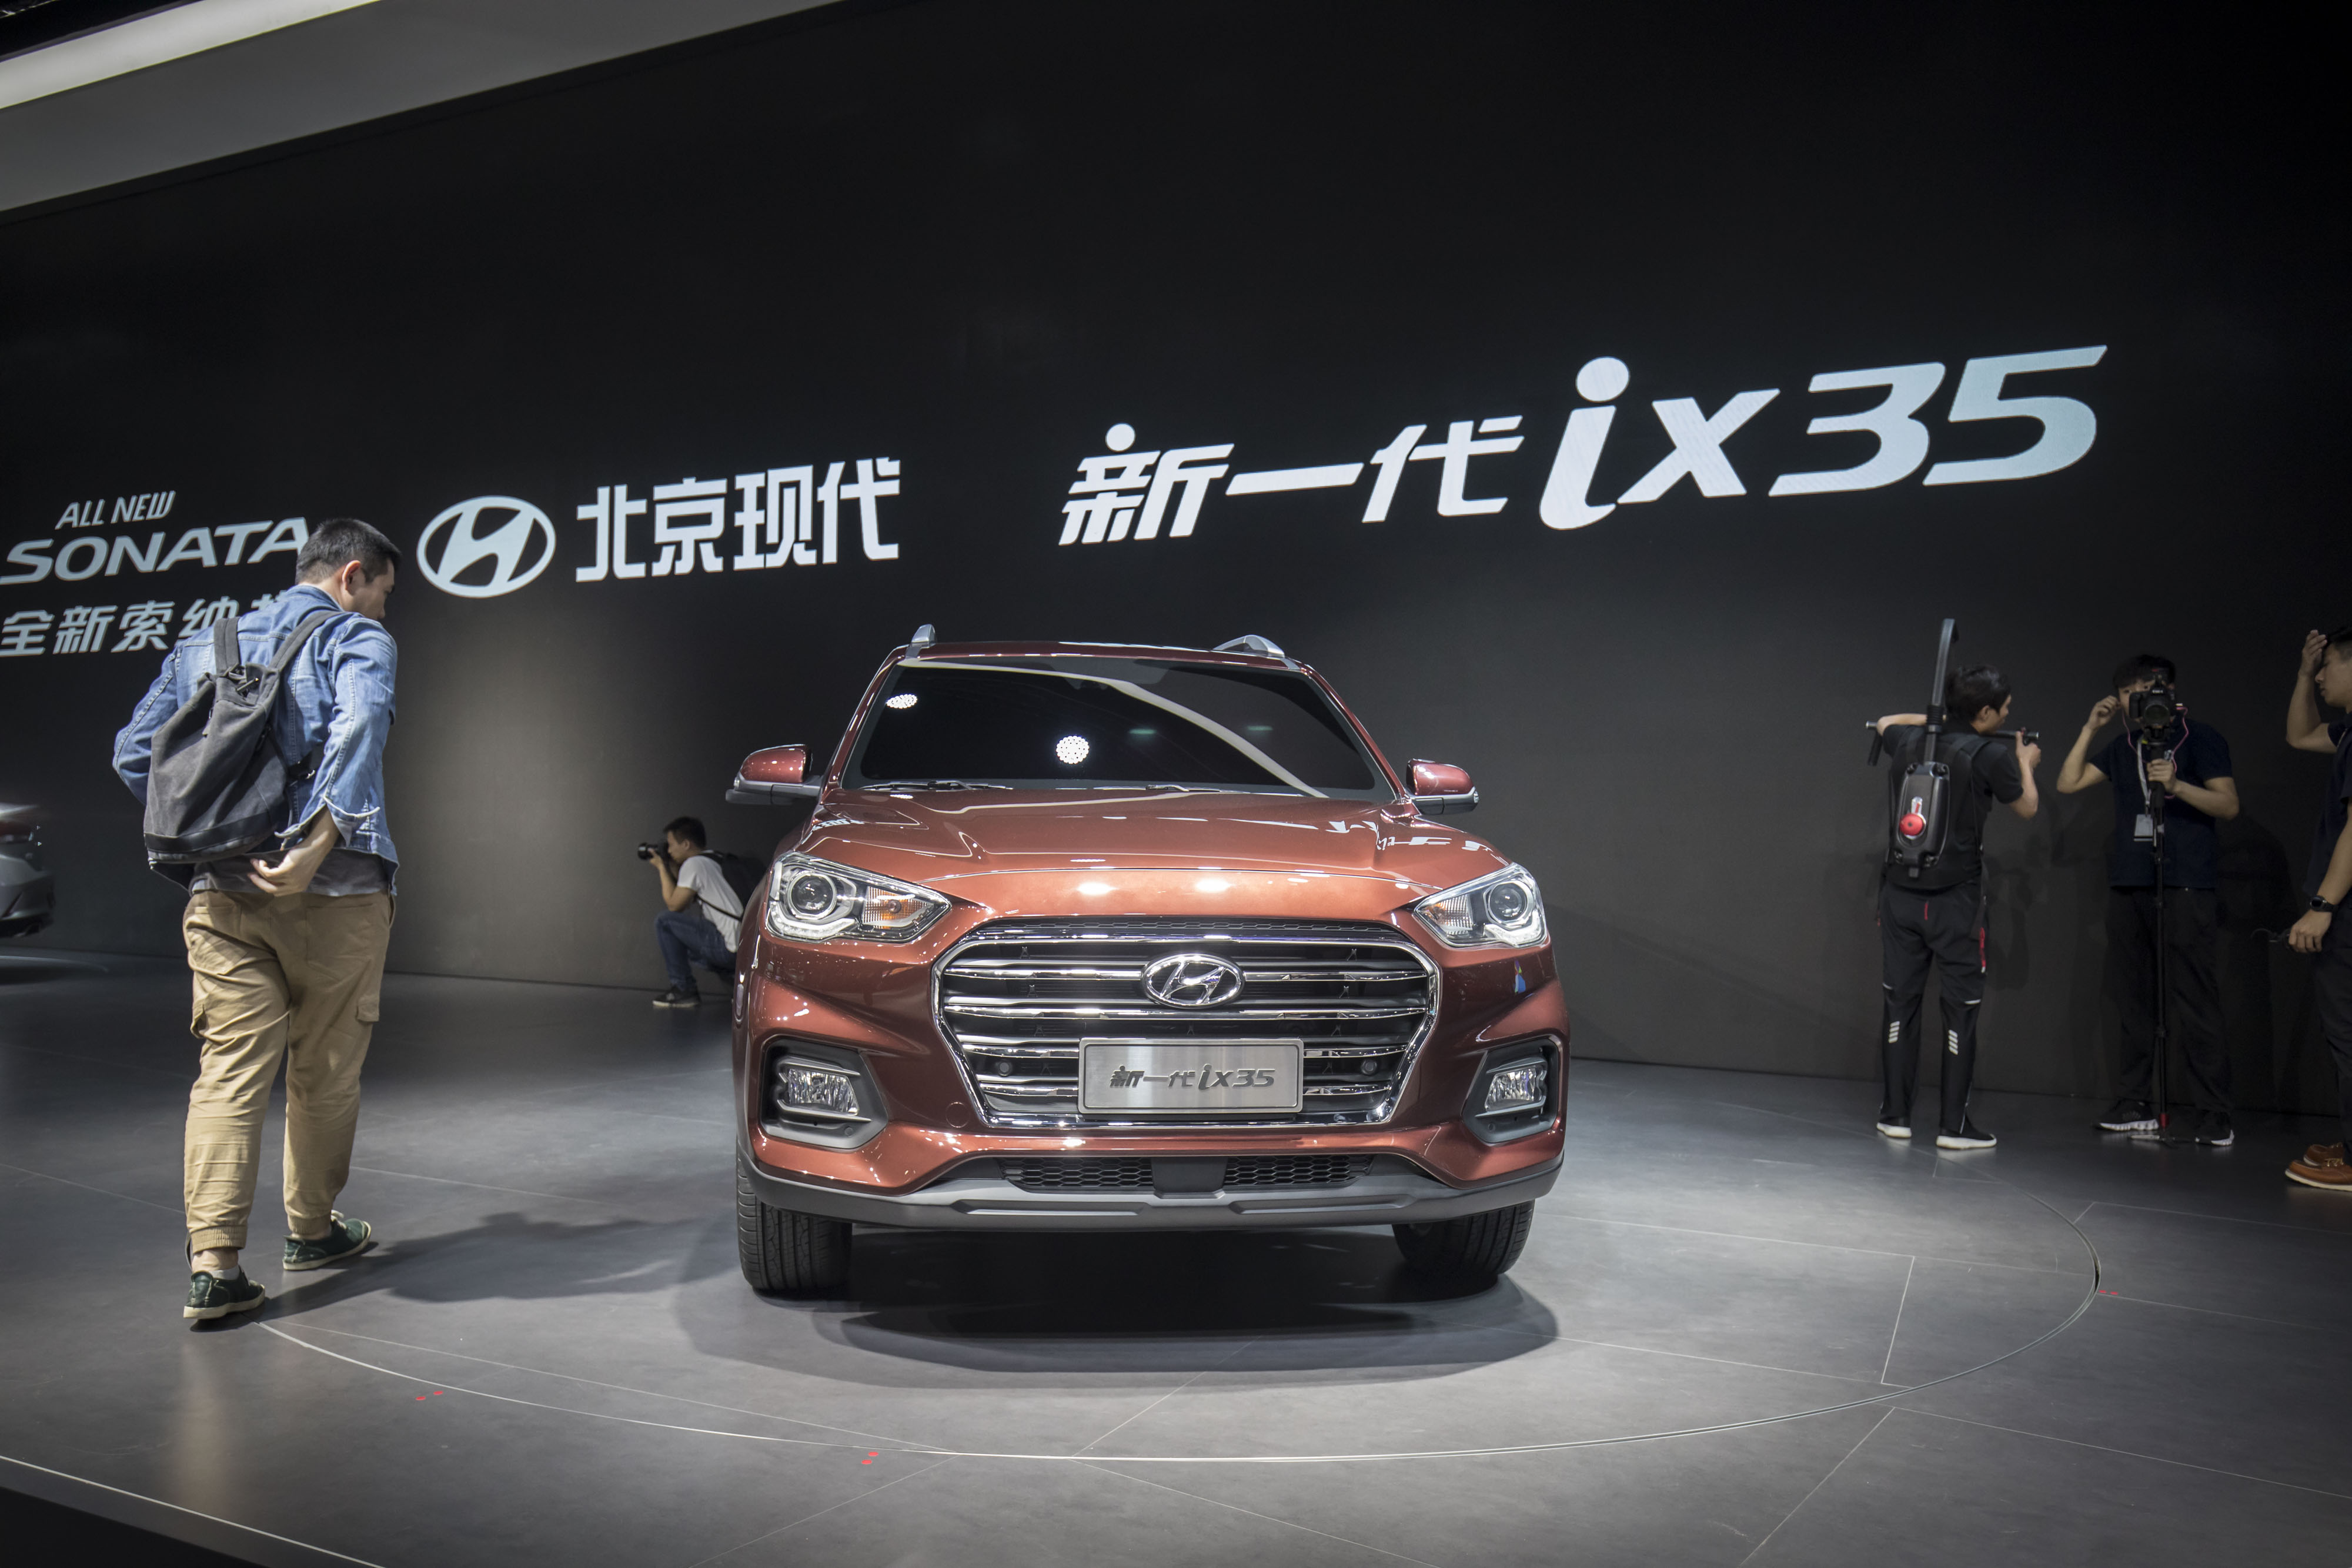 New 2022 Hyundai ix35 in-depth Walkaround 